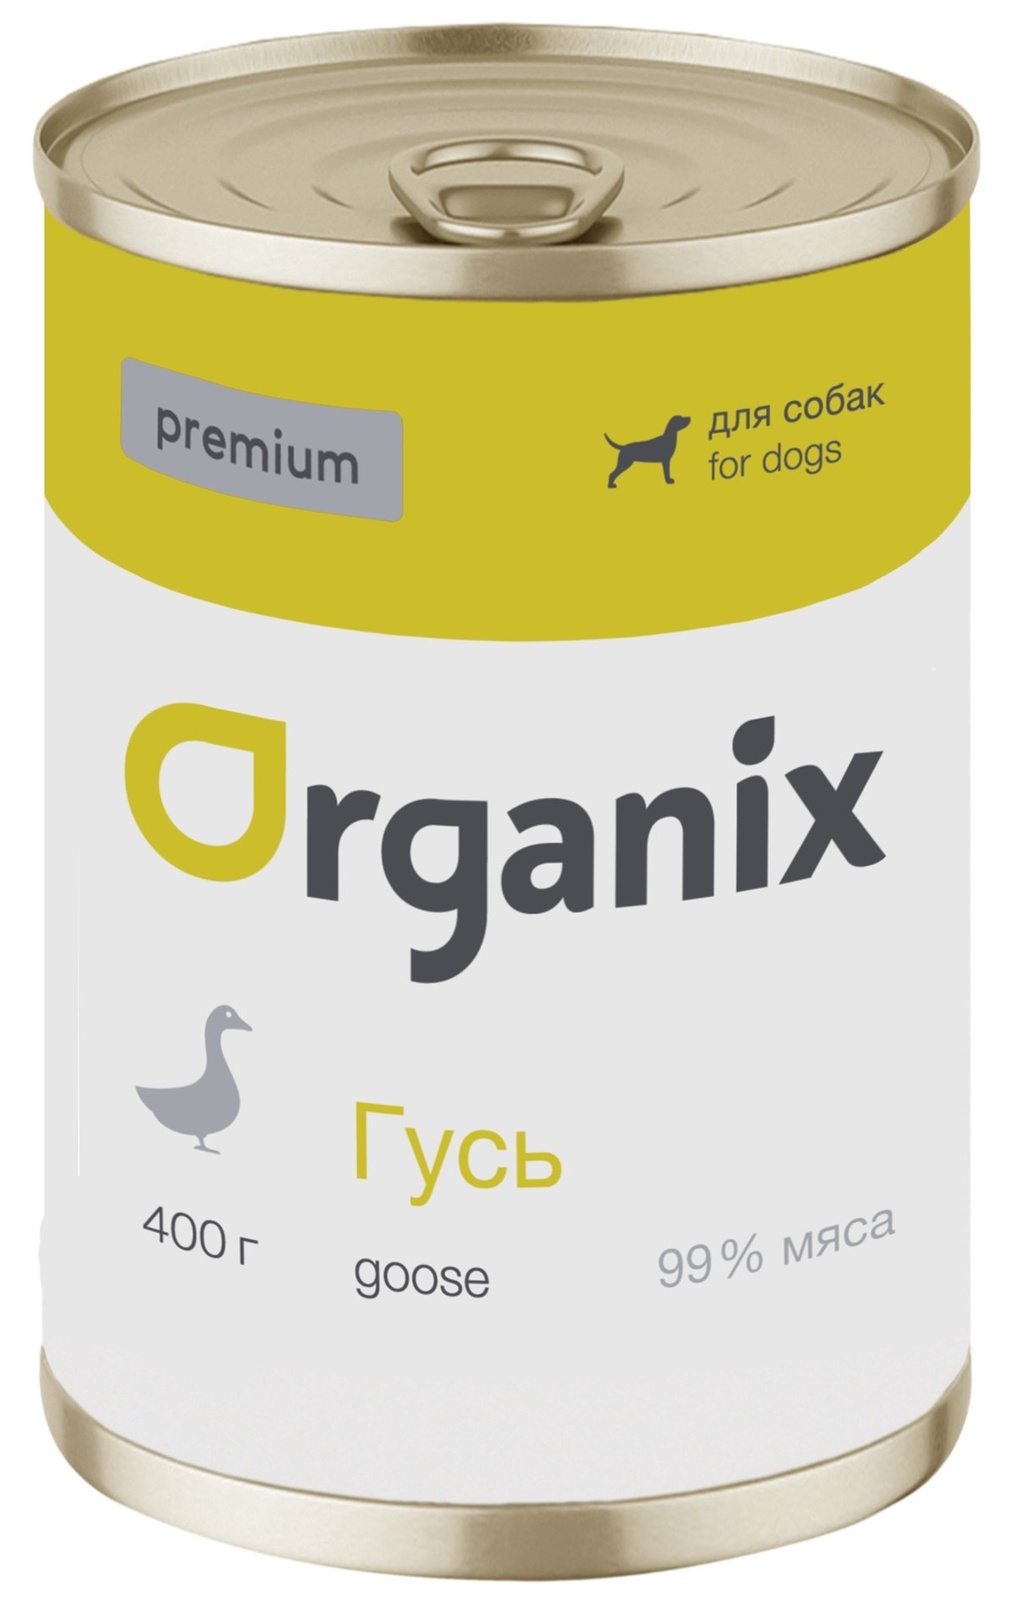 Organix консервы Organix монобелковые премиум консервы для собак, с гусем (400 г) organix консервы organix консервы для собак утка индейка картофель 400 г